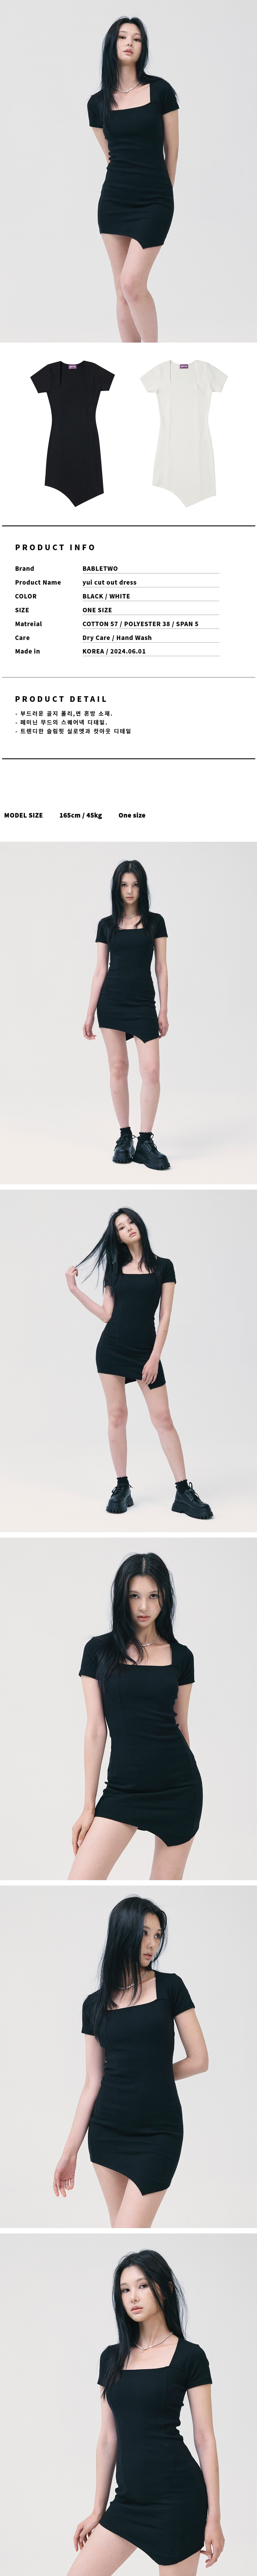 yui cut out dress-black